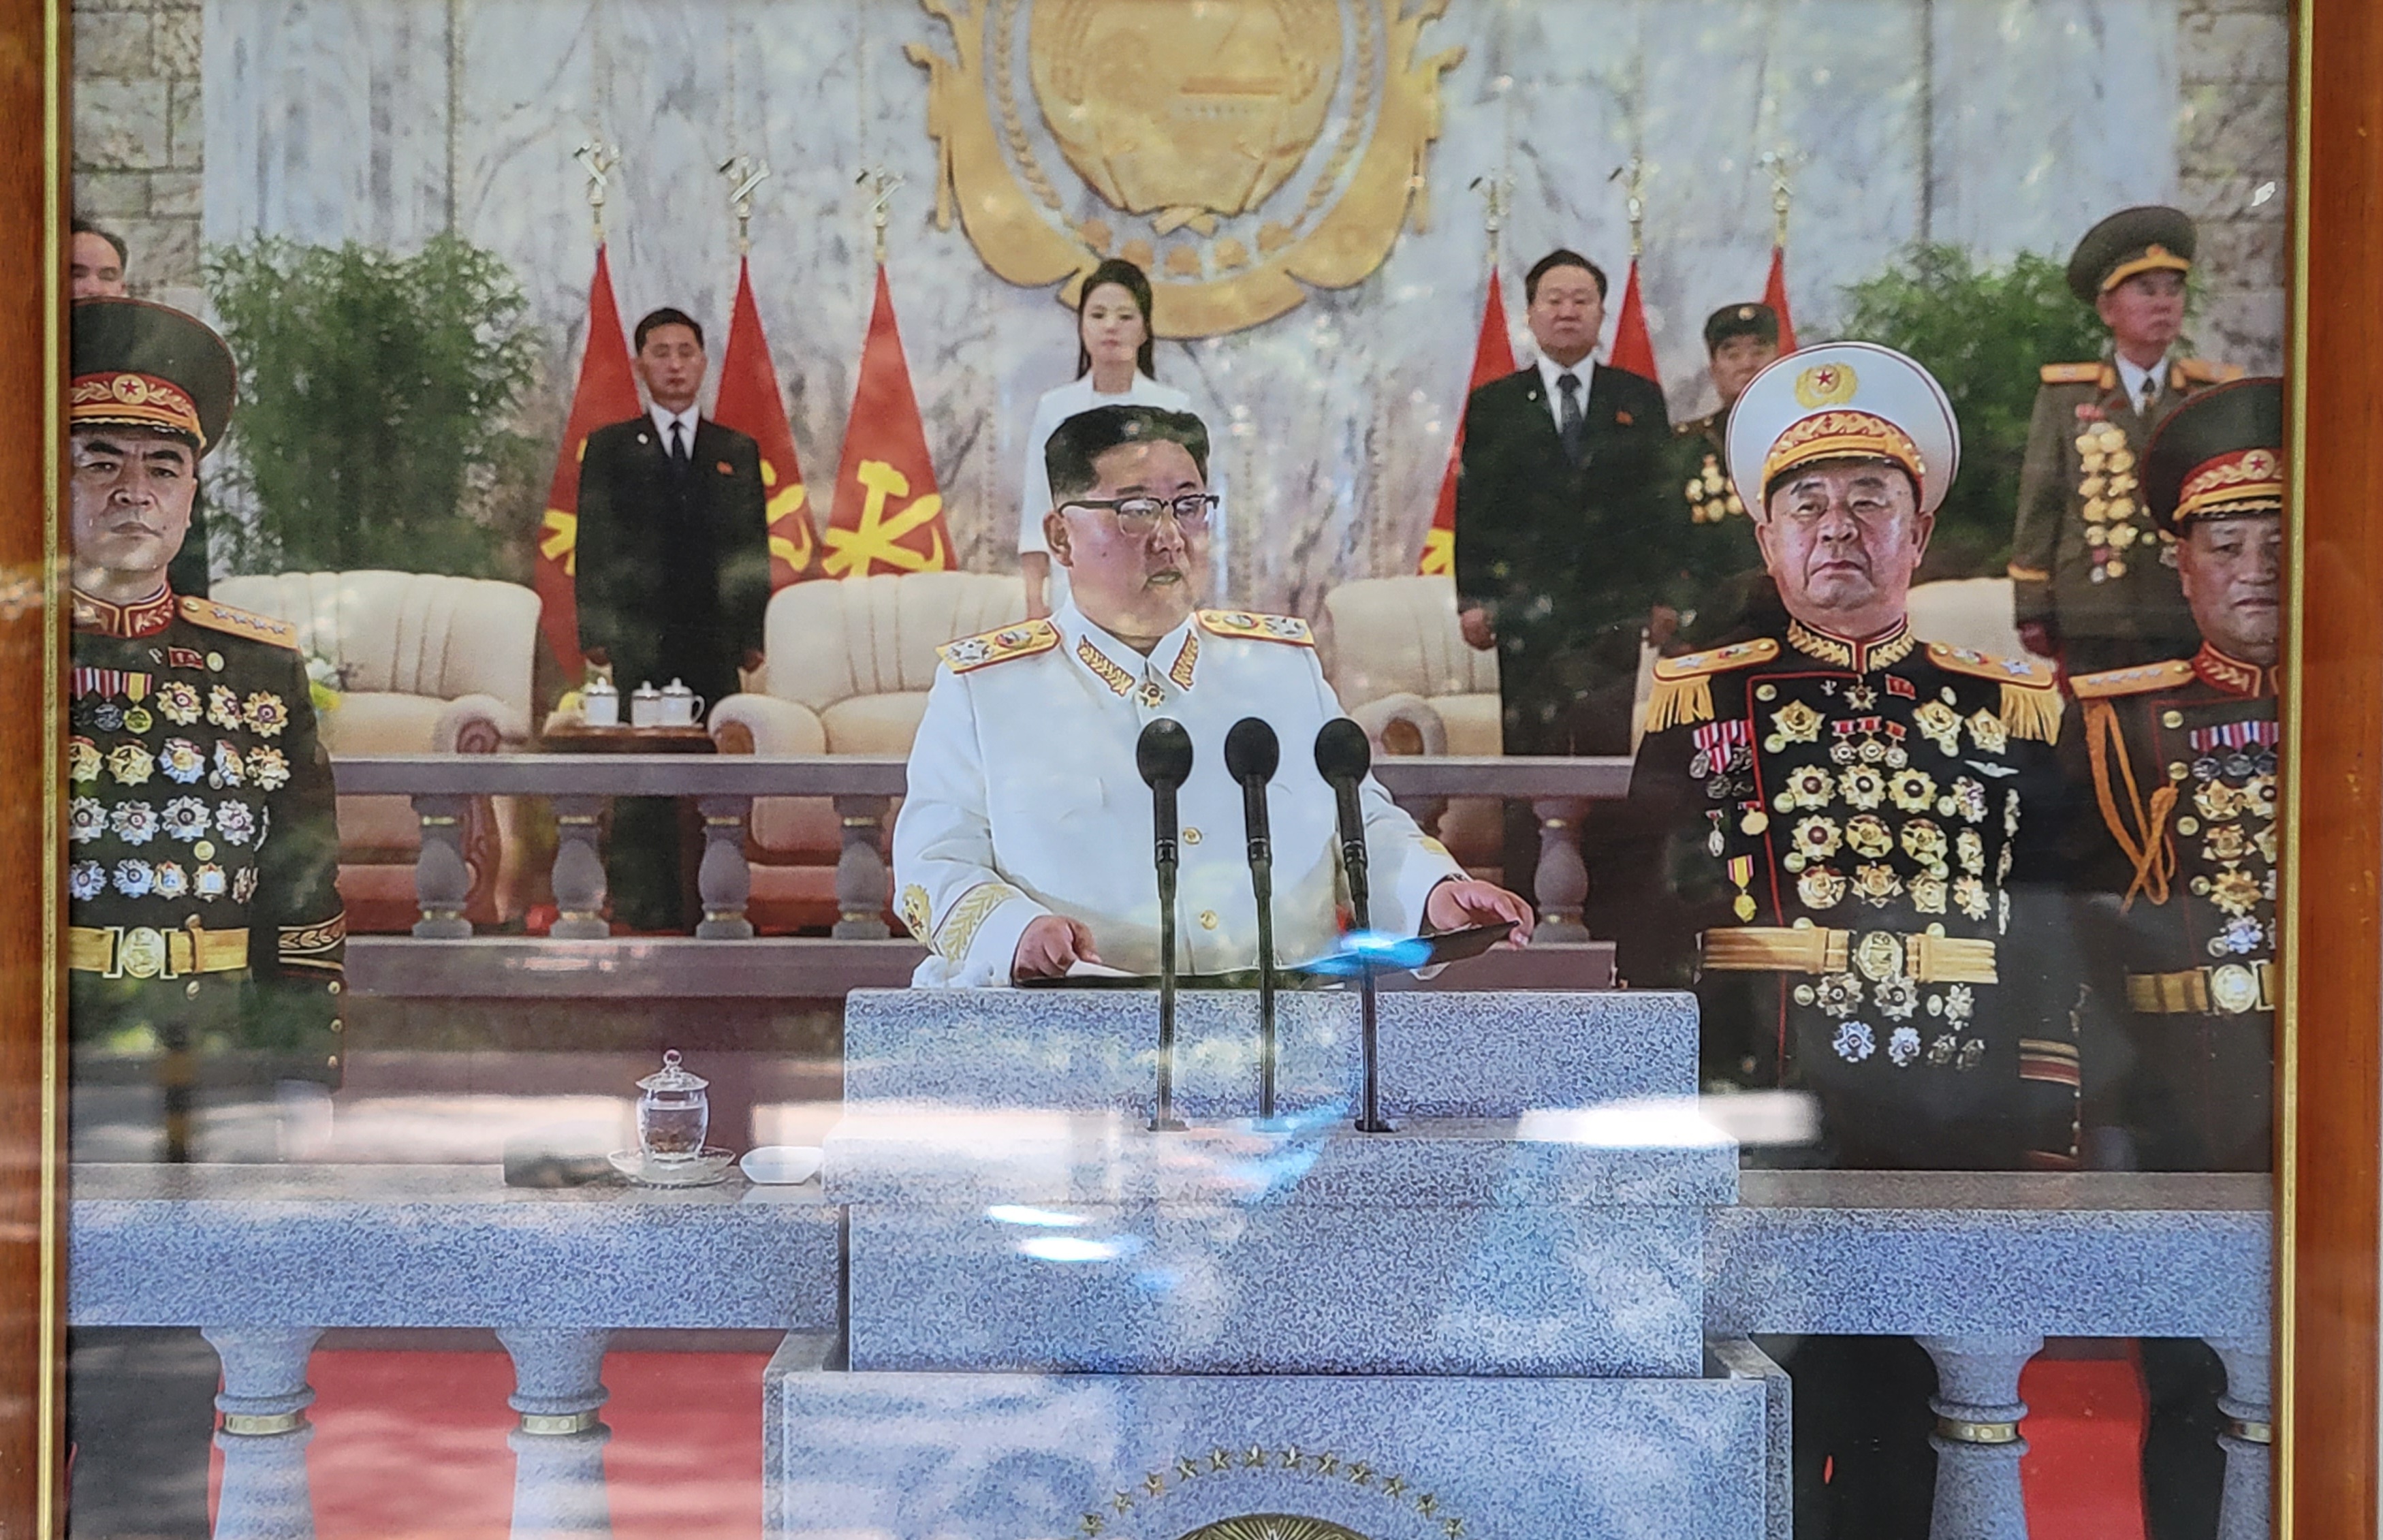 주중 북한대사관 게시판은 4월 25일 북한군 열병식에서 원수복을 입고 연설하는 김정은 위원장의 사진을 게시했다. (사진: 조성원 기자)